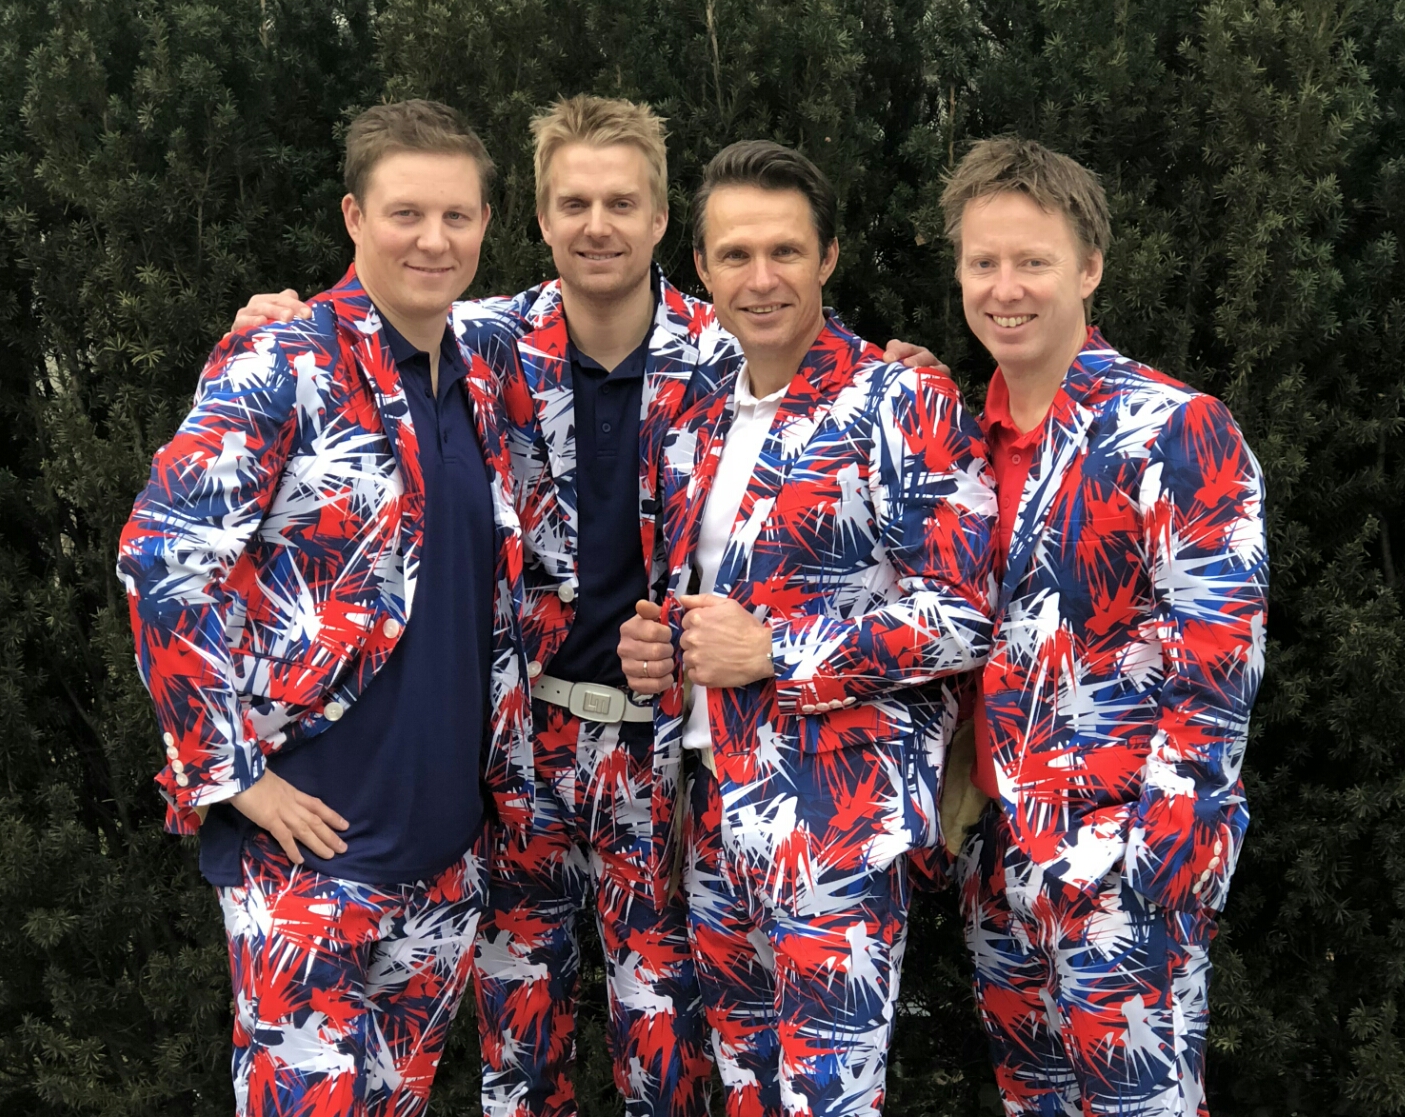 Norway Curling Team